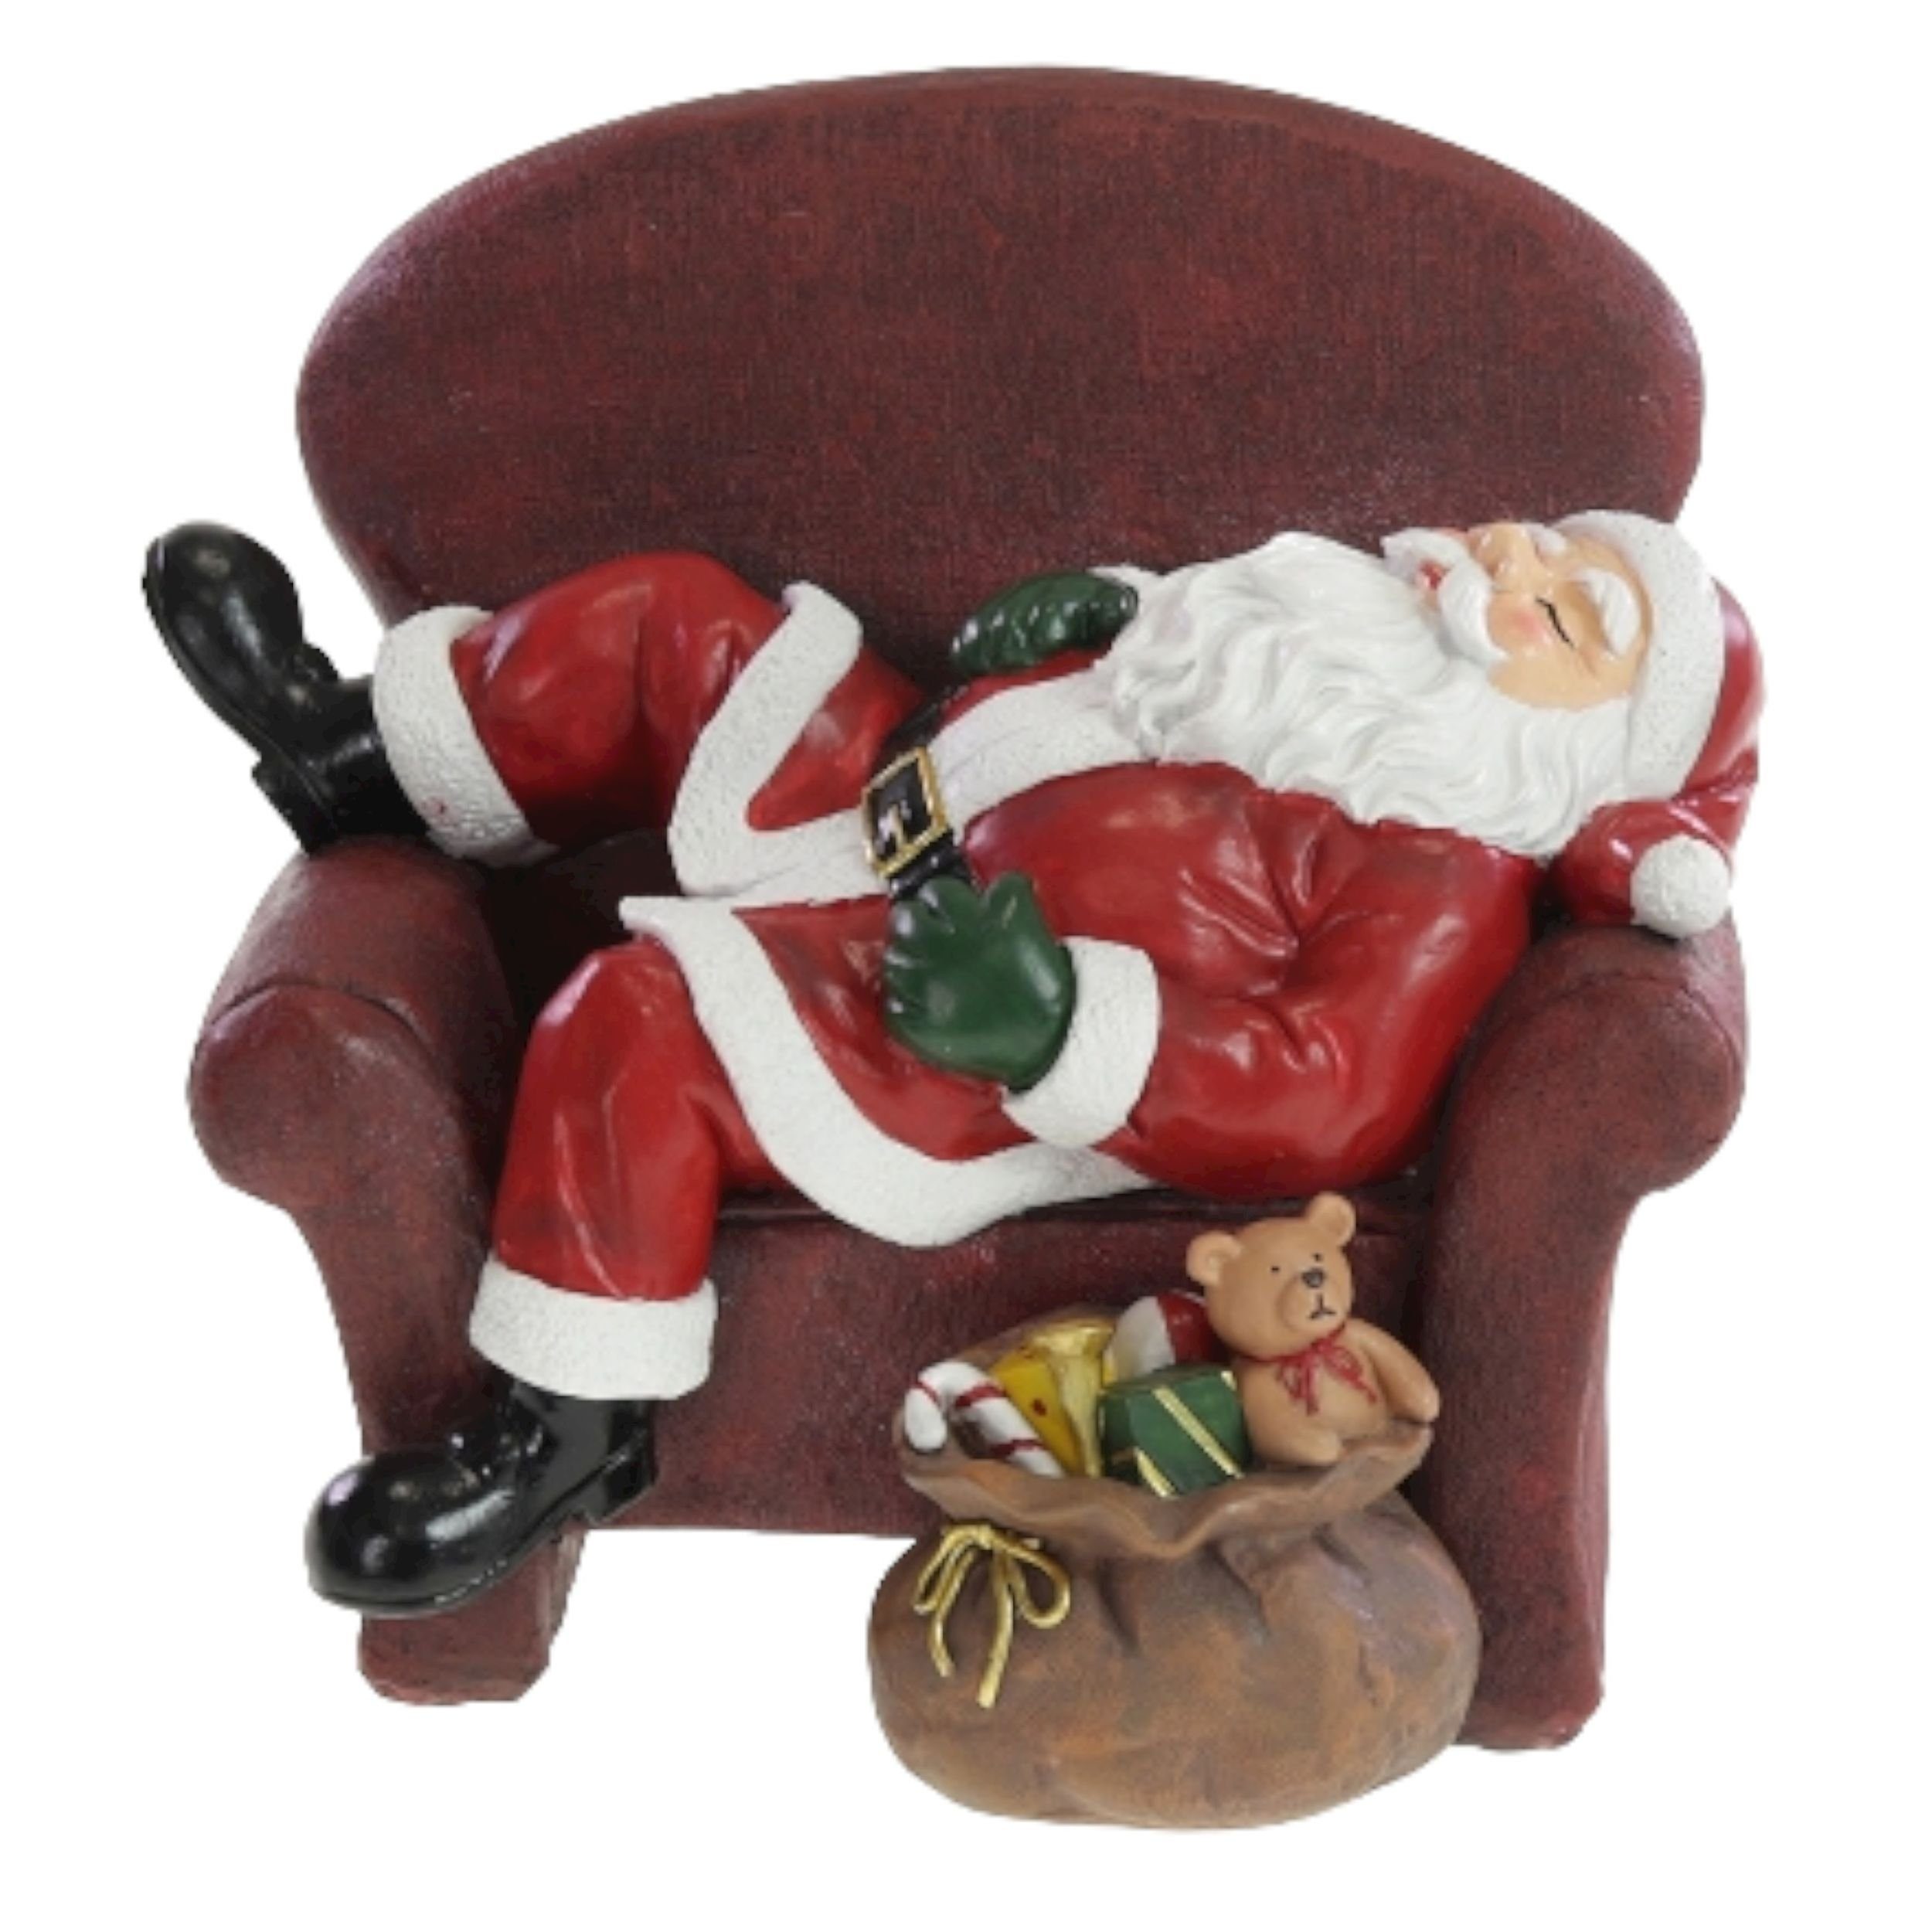 Werner Voß Weihnachtsmann Schlafender Weihnachtsmann Santa auf Sofa 23cm